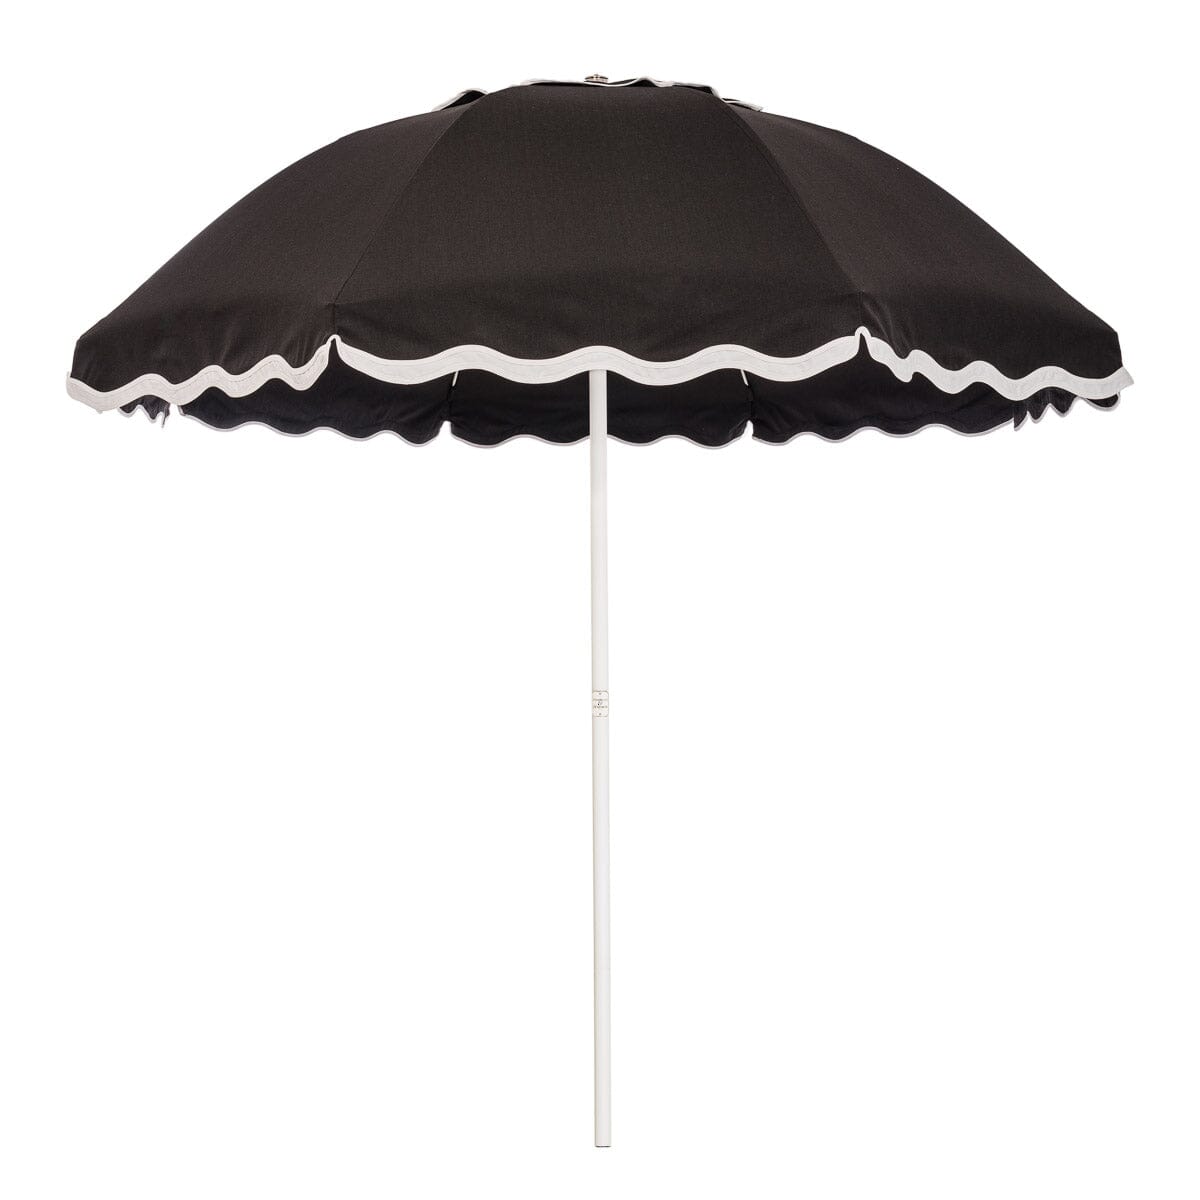 The Patio Umbrella - Rivie Black Patio Umbrella Business & Pleasure Co Aus 